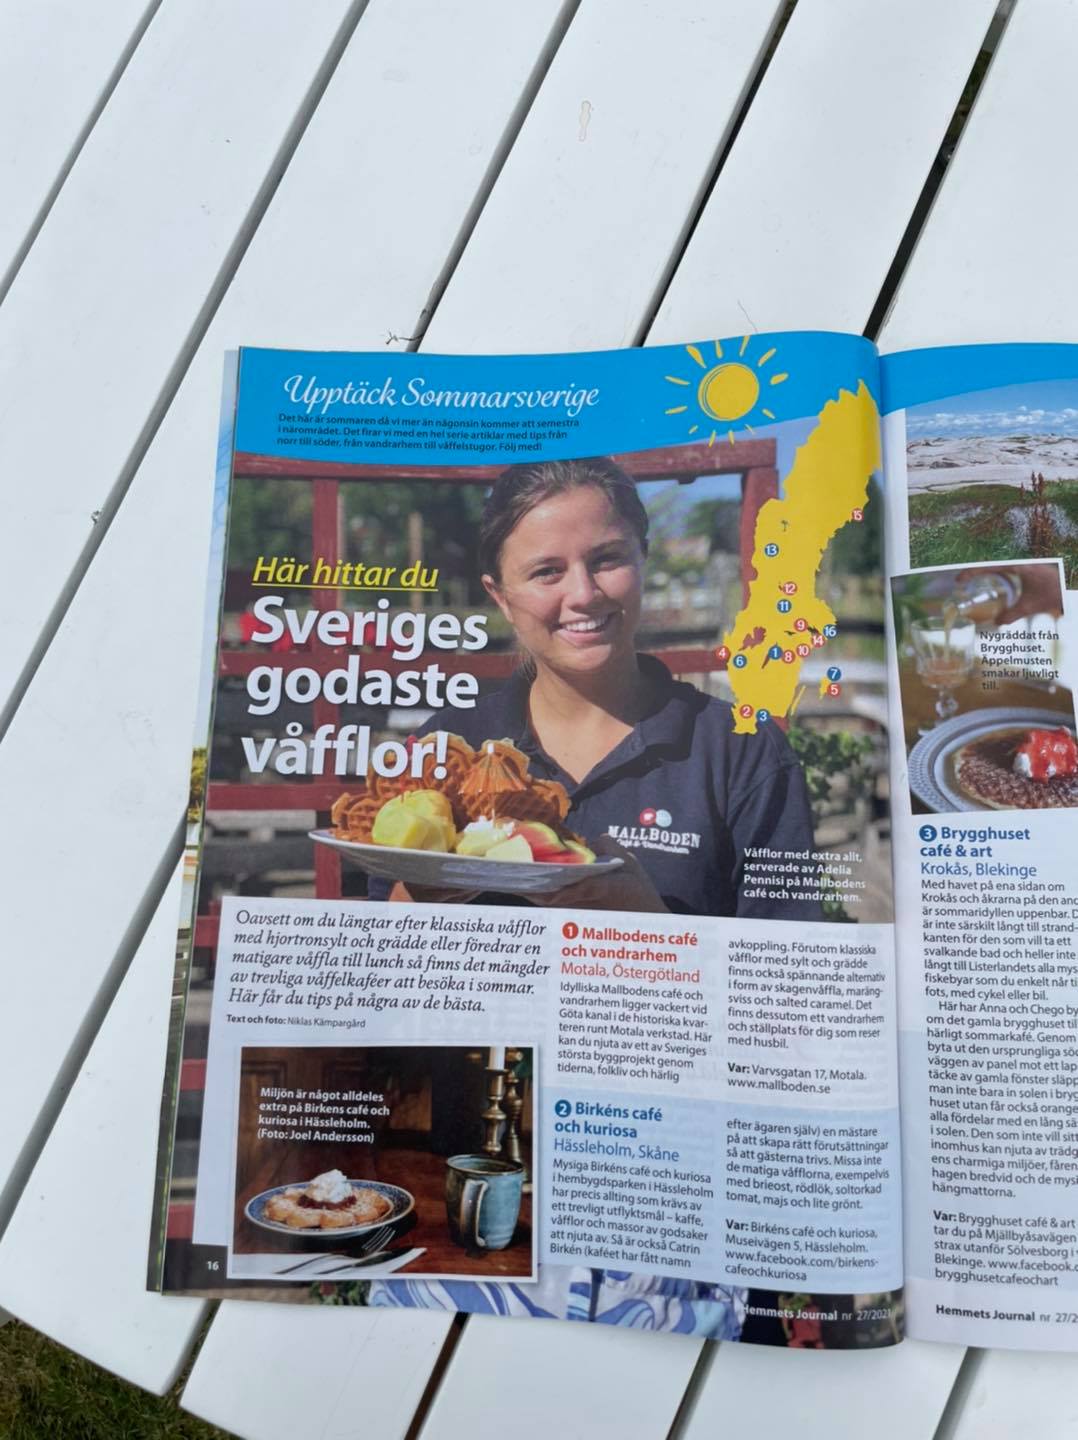 Ett magasin ligger uppslaget på ett bord med en artikel om Sveriges godaste våfflor. På bilden syns en ung tjej från Mallbodens Cafe och vandrarhem hålla upp en tallrik med våfflor.